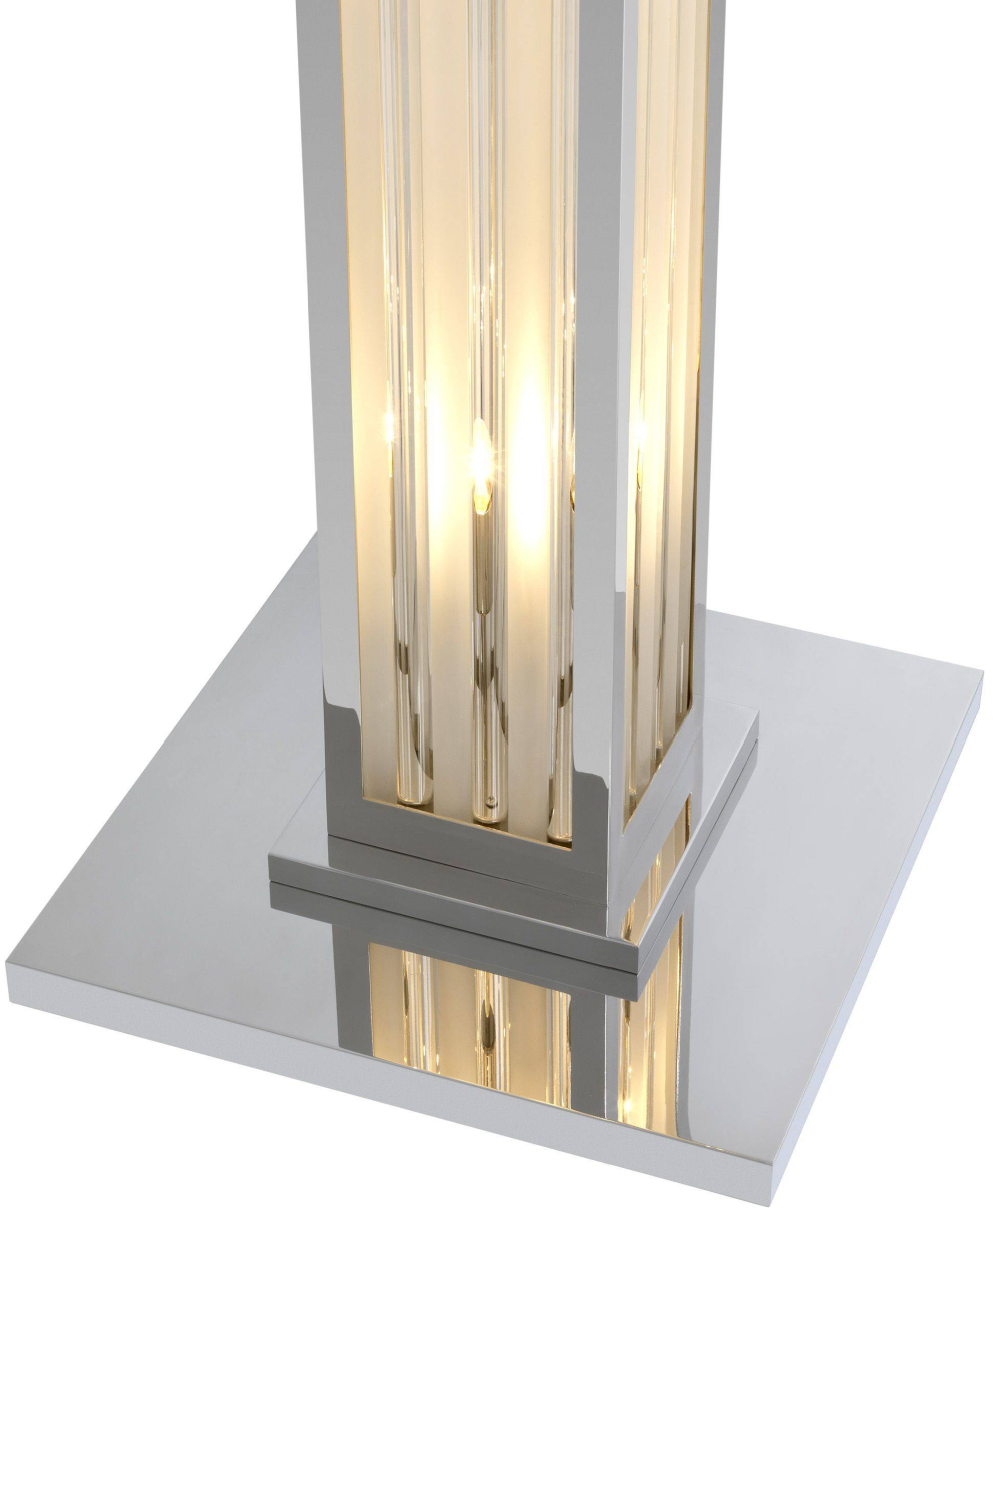 Silver Torch Floor Lamp | Eichholtz Dorrell | #1 Eichholtz Retailer